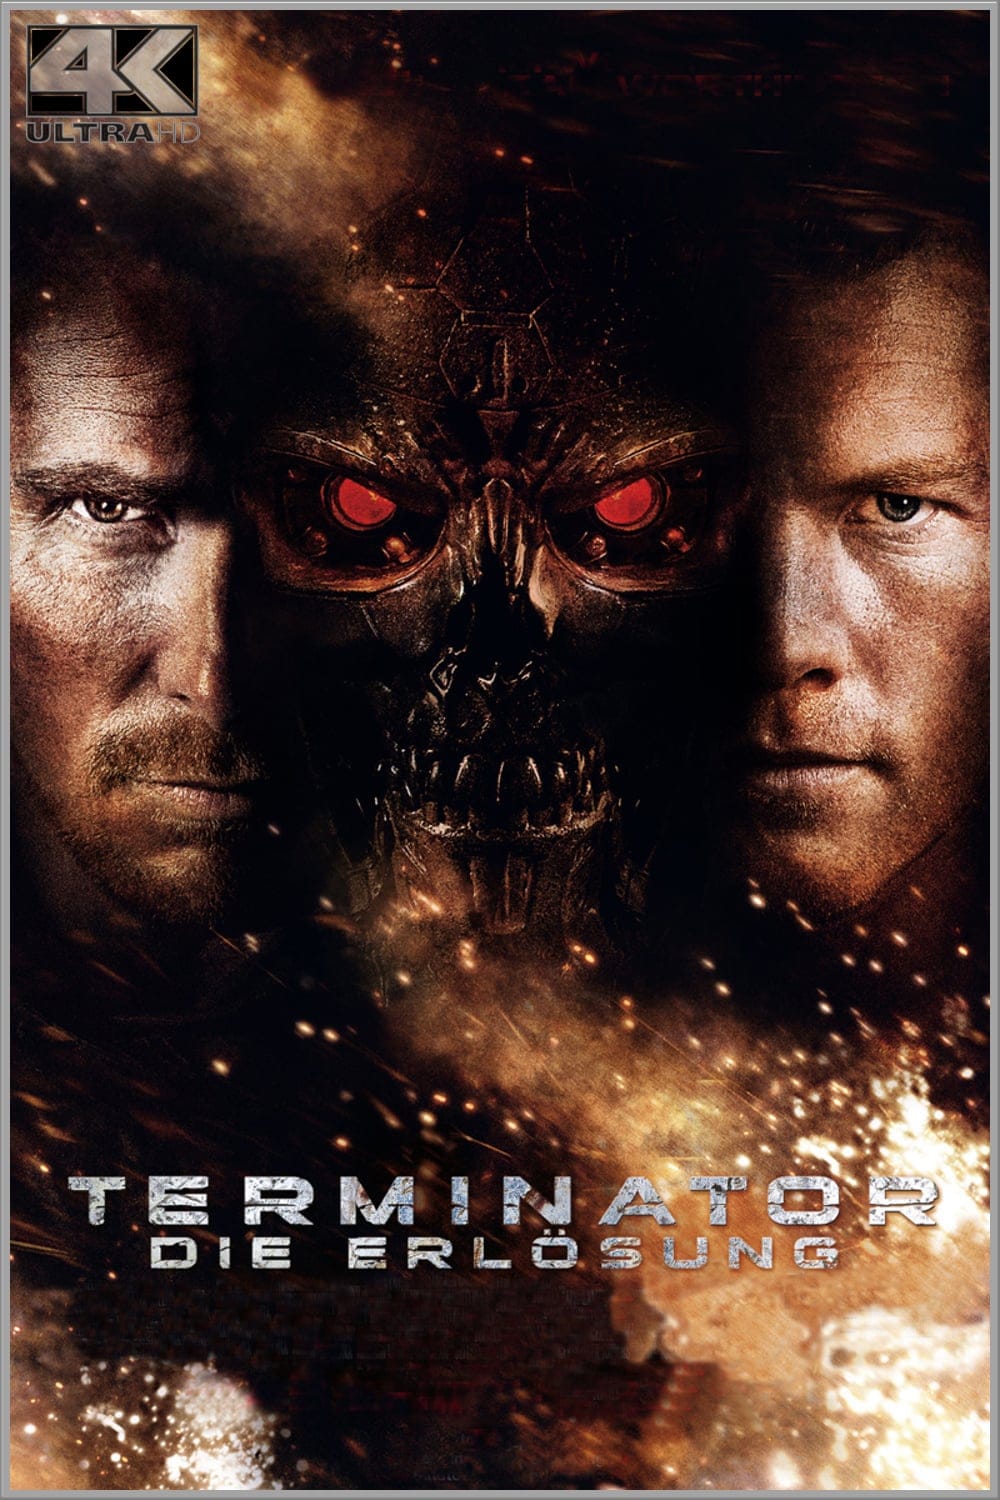 Plakat von "Terminator: Die Erlösung"